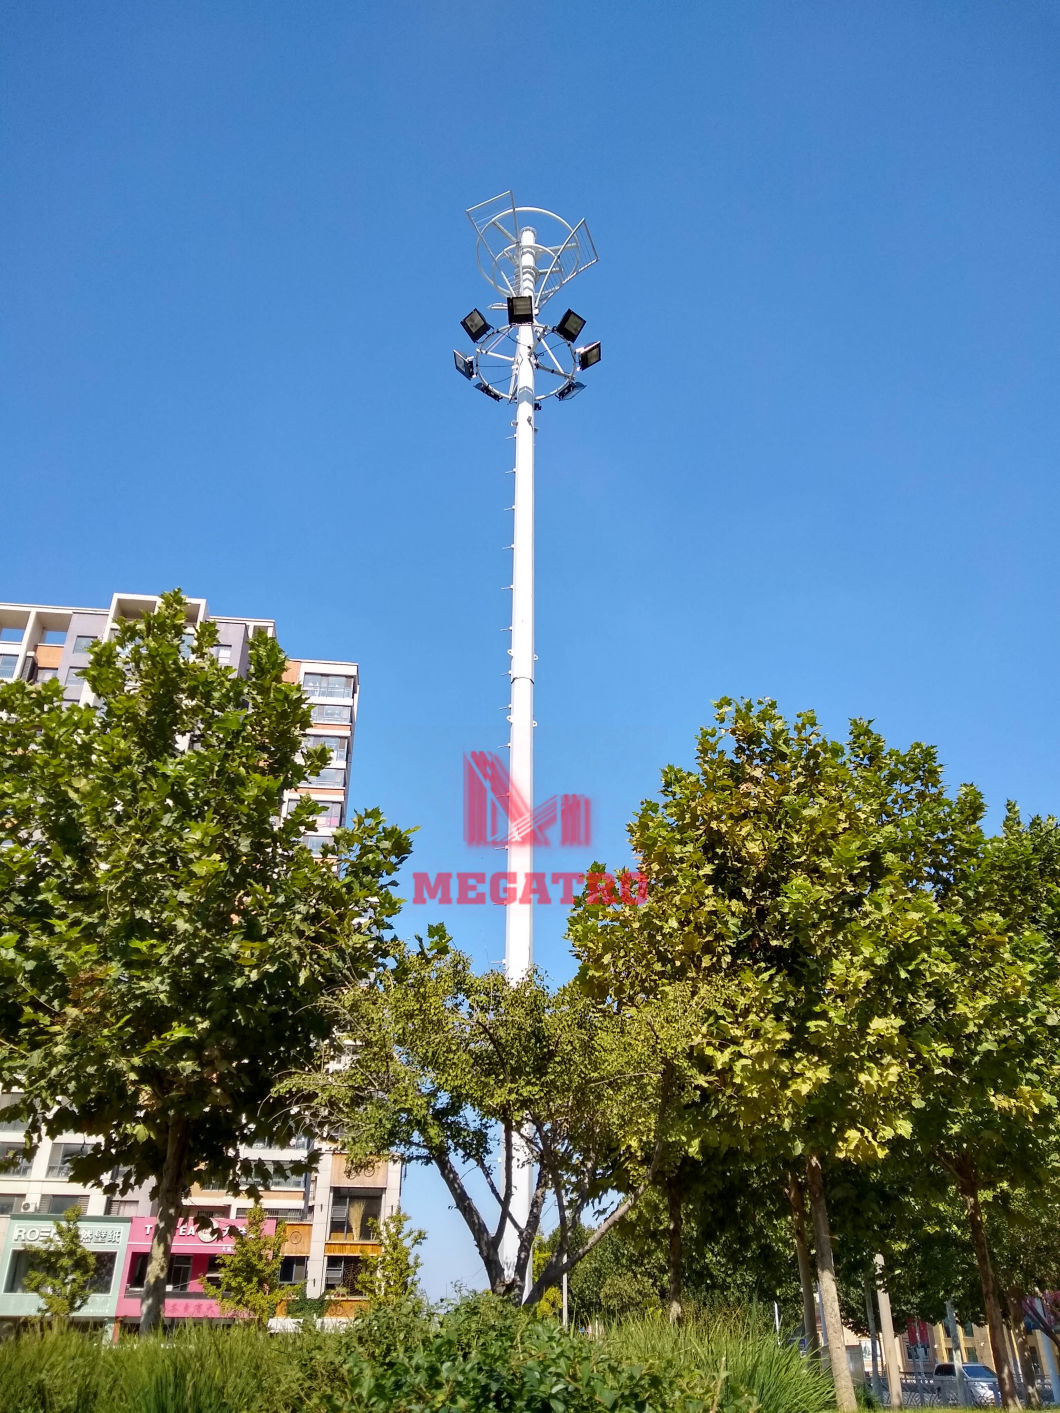 Megatro Light Pole with Lamp Pole